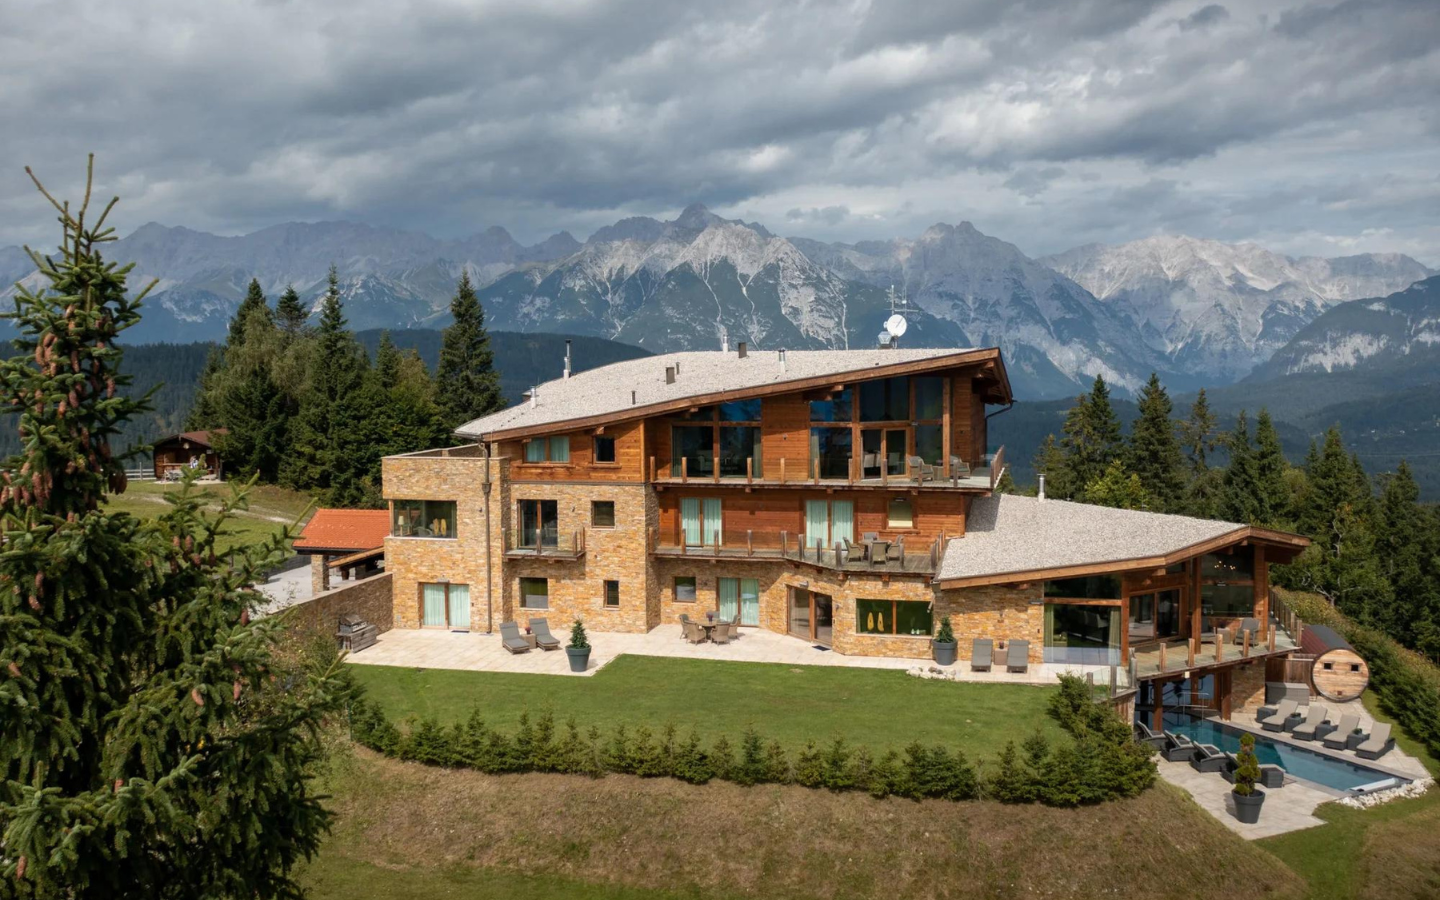 Chalet de montagne de luxe, Seefeld, Alpes autrichiennes, Tyrol, Autriche